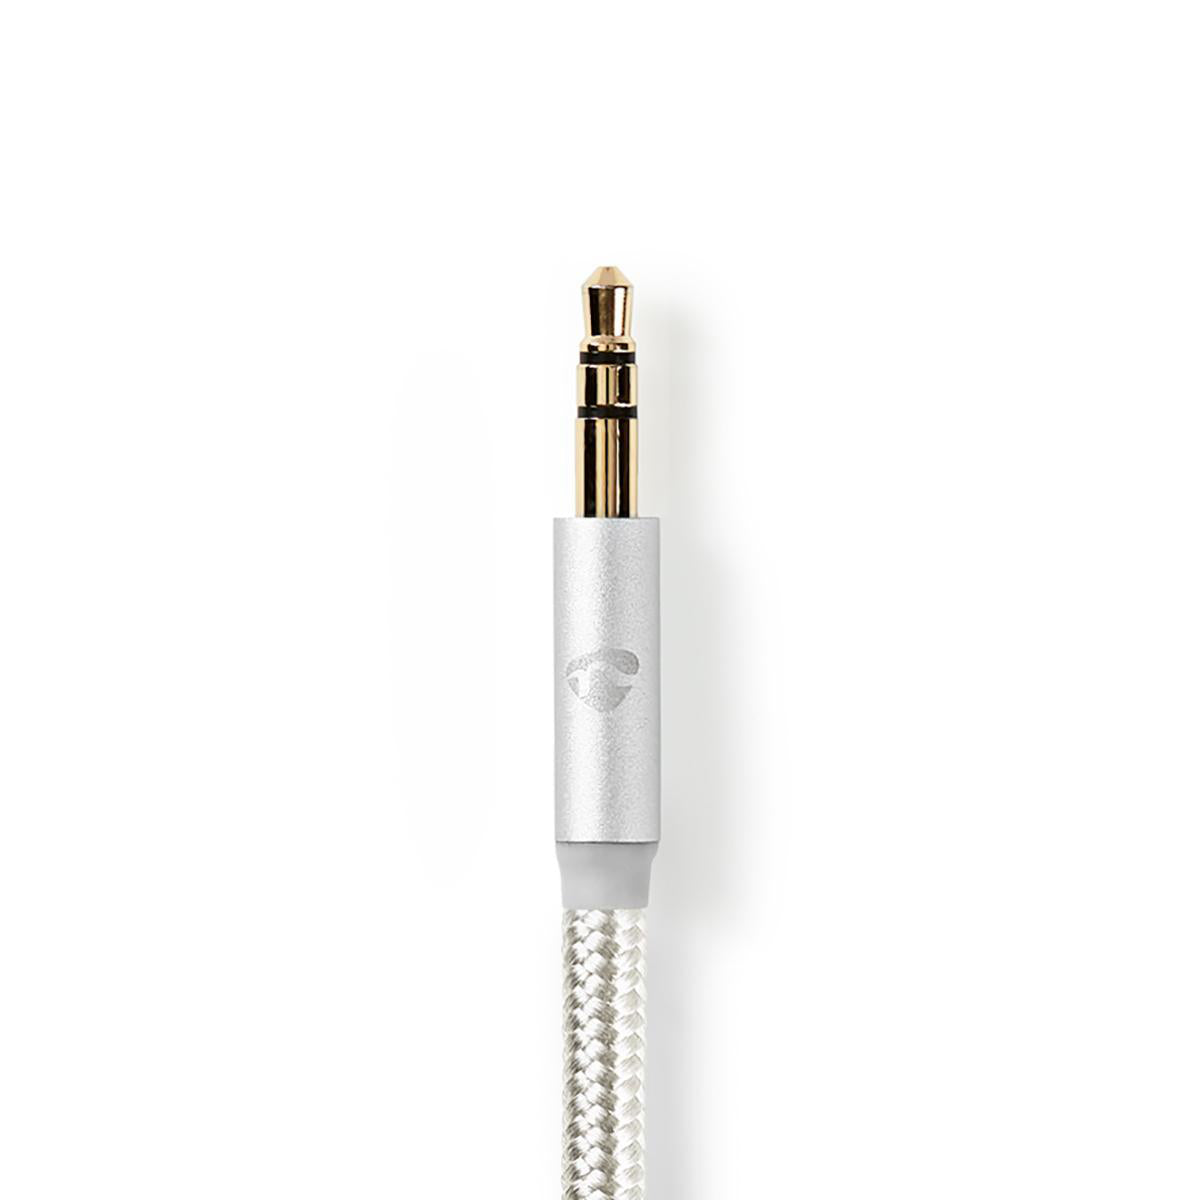 Lightning-Adapter | Apple Lightning 8-Pin | 3.5 mm Stecker | Vergoldet | 1.00 m | Rund | Nylon